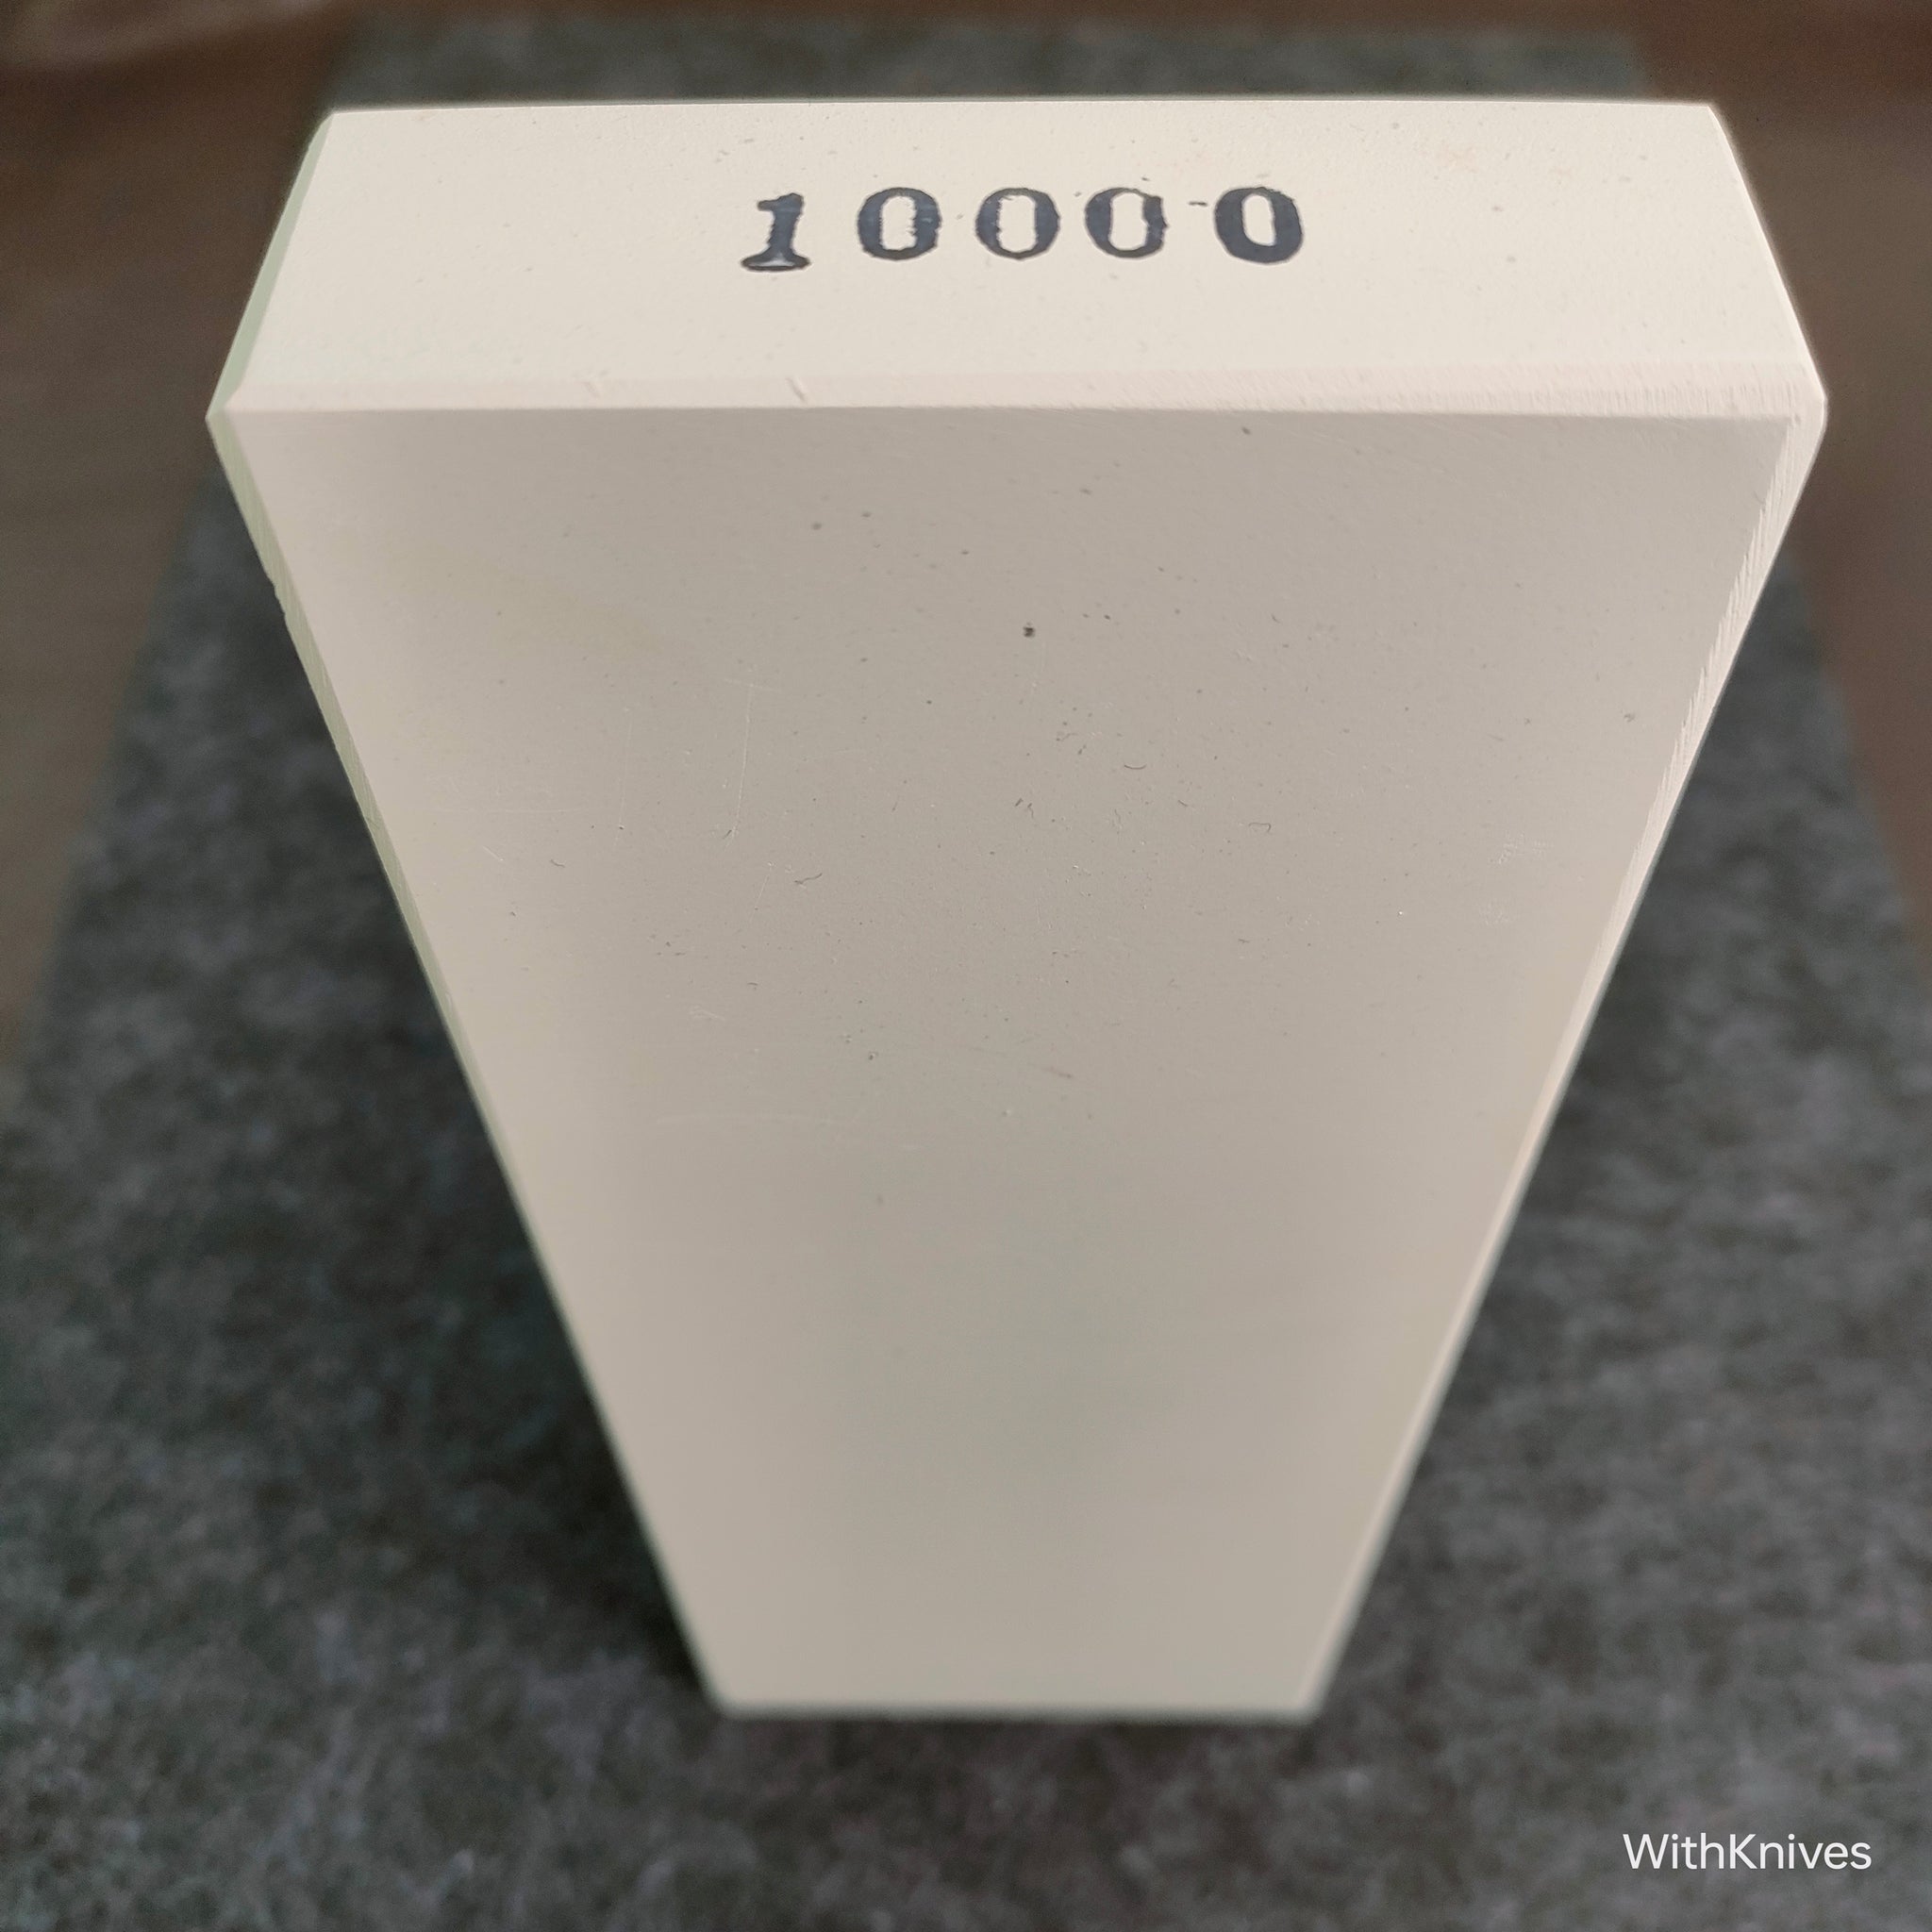 Imanishi #10,000 Polishing Stone